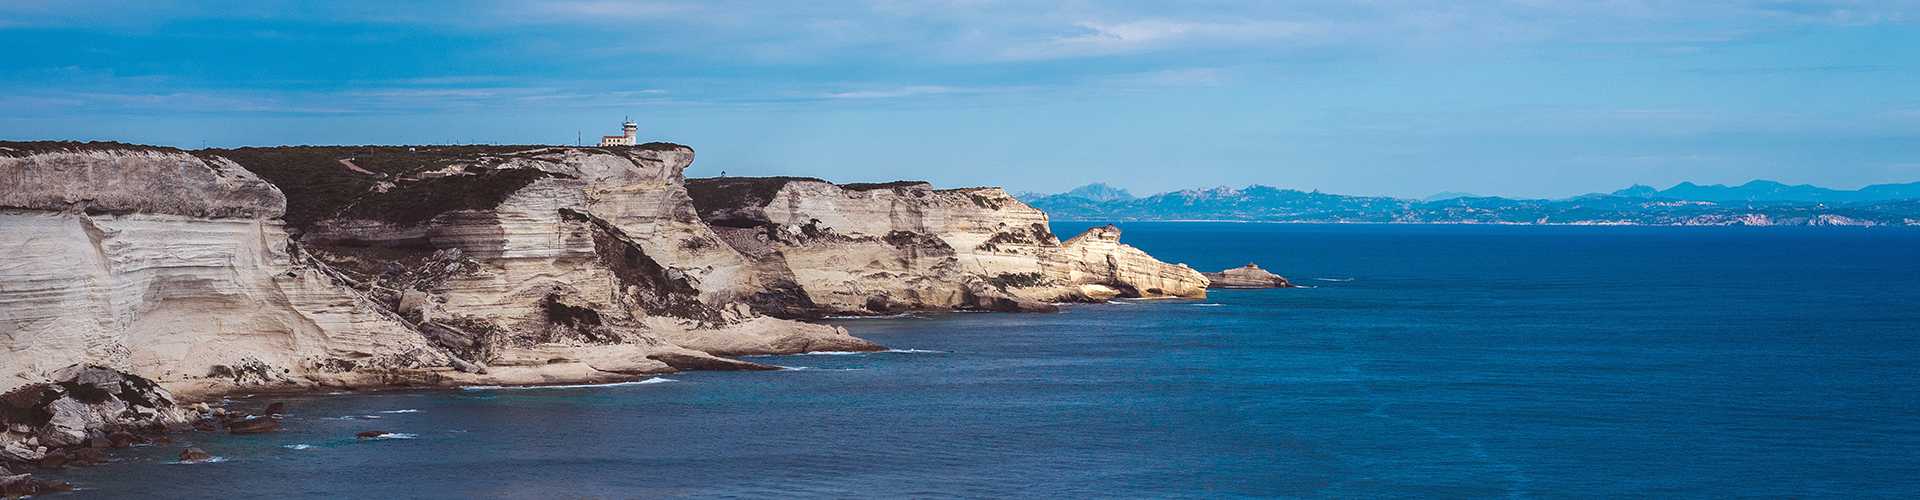 La Corsica: le Bocche di Bonifacio, le isole Piana, Cavallo e Lavezzi